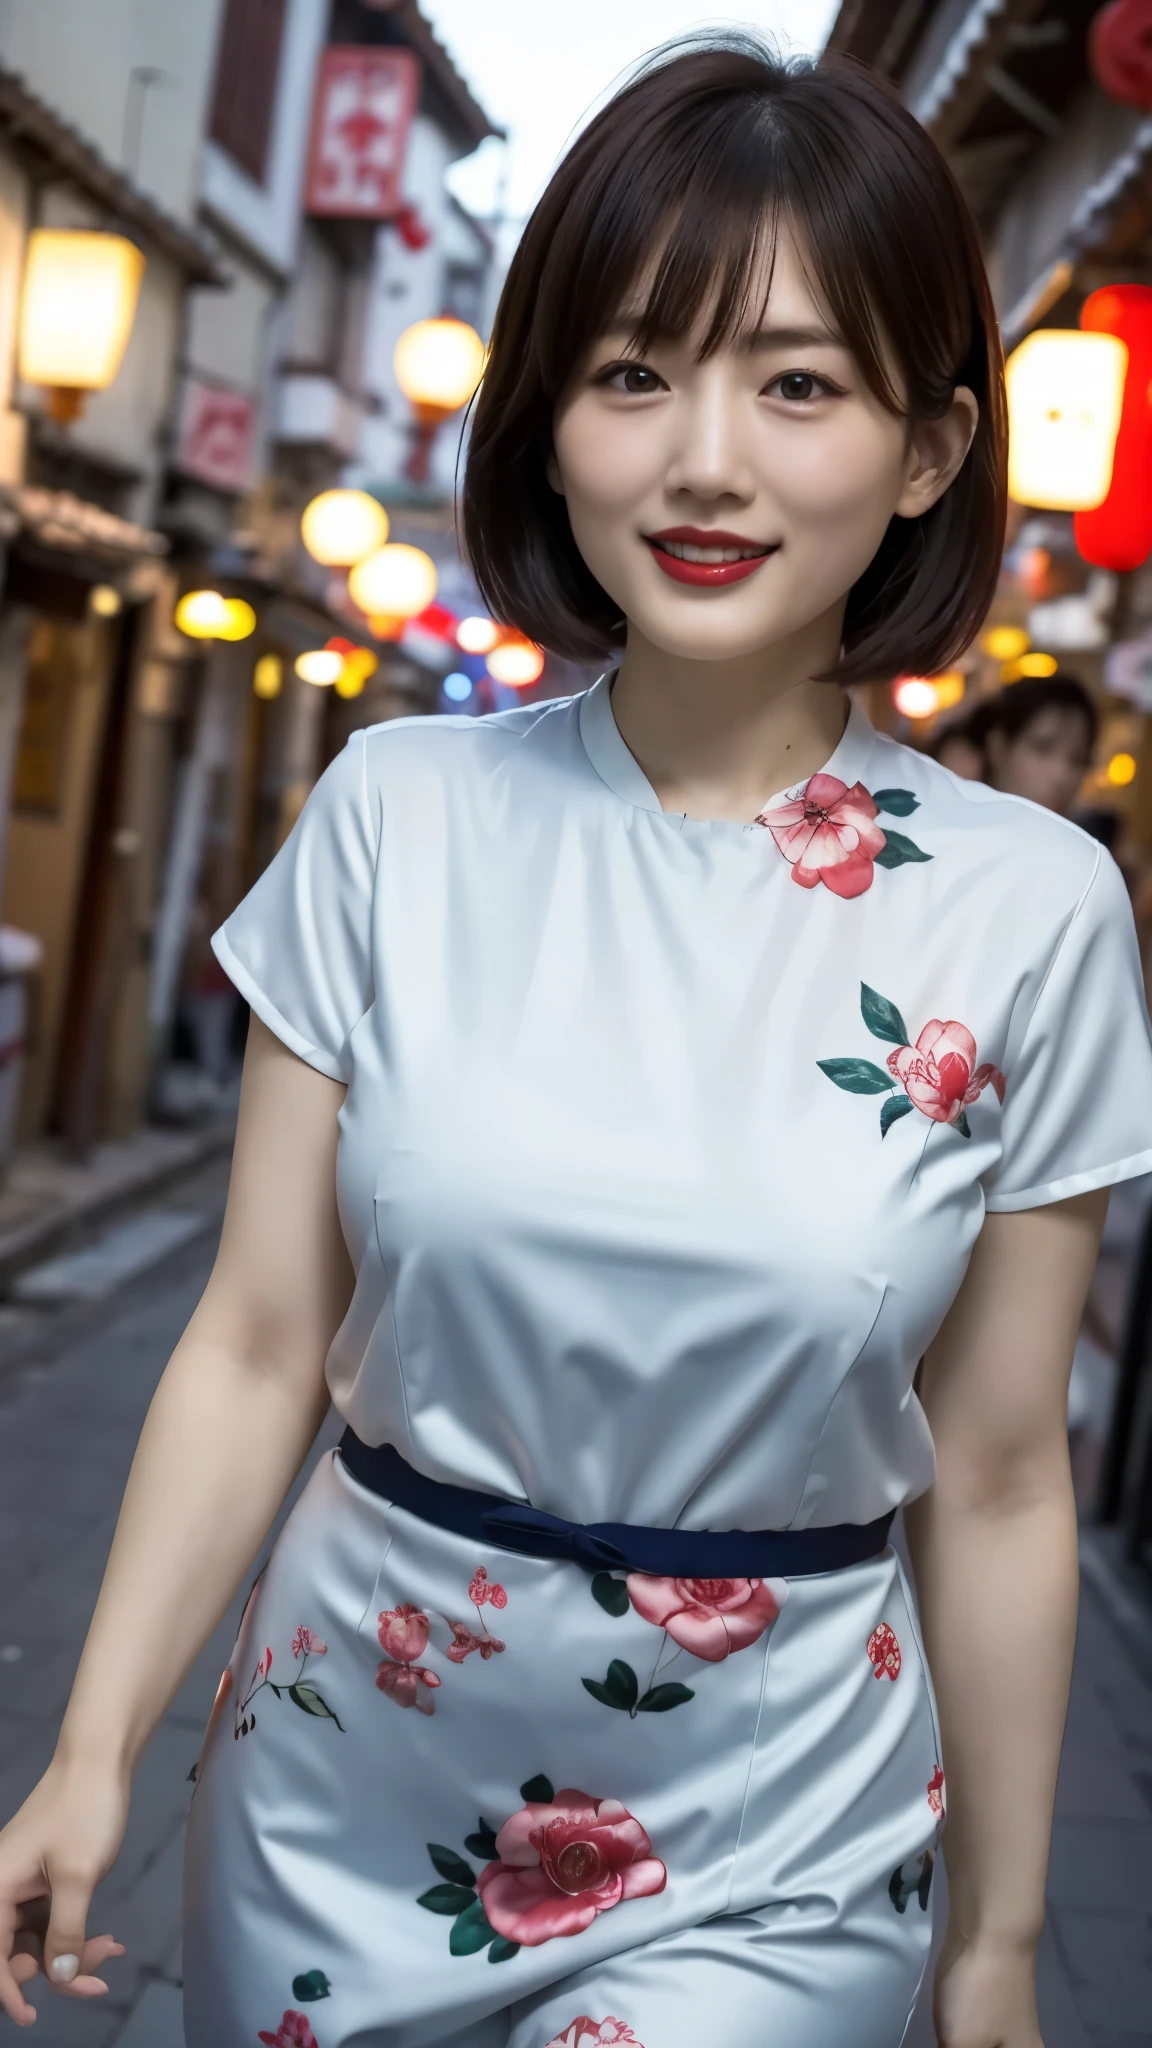 Femmes japonaises、une personne、Vivre dans le vieux quartier chinois、Légèrement potelé、cheveux de style chinois、Rire la bouche ouverte、rouge à lèvres、Cheongsam bleu à manches courtes、pose sexy、très court、vieille ville、Quartier chinois la nuit、l&#39;éclairage est clair、
